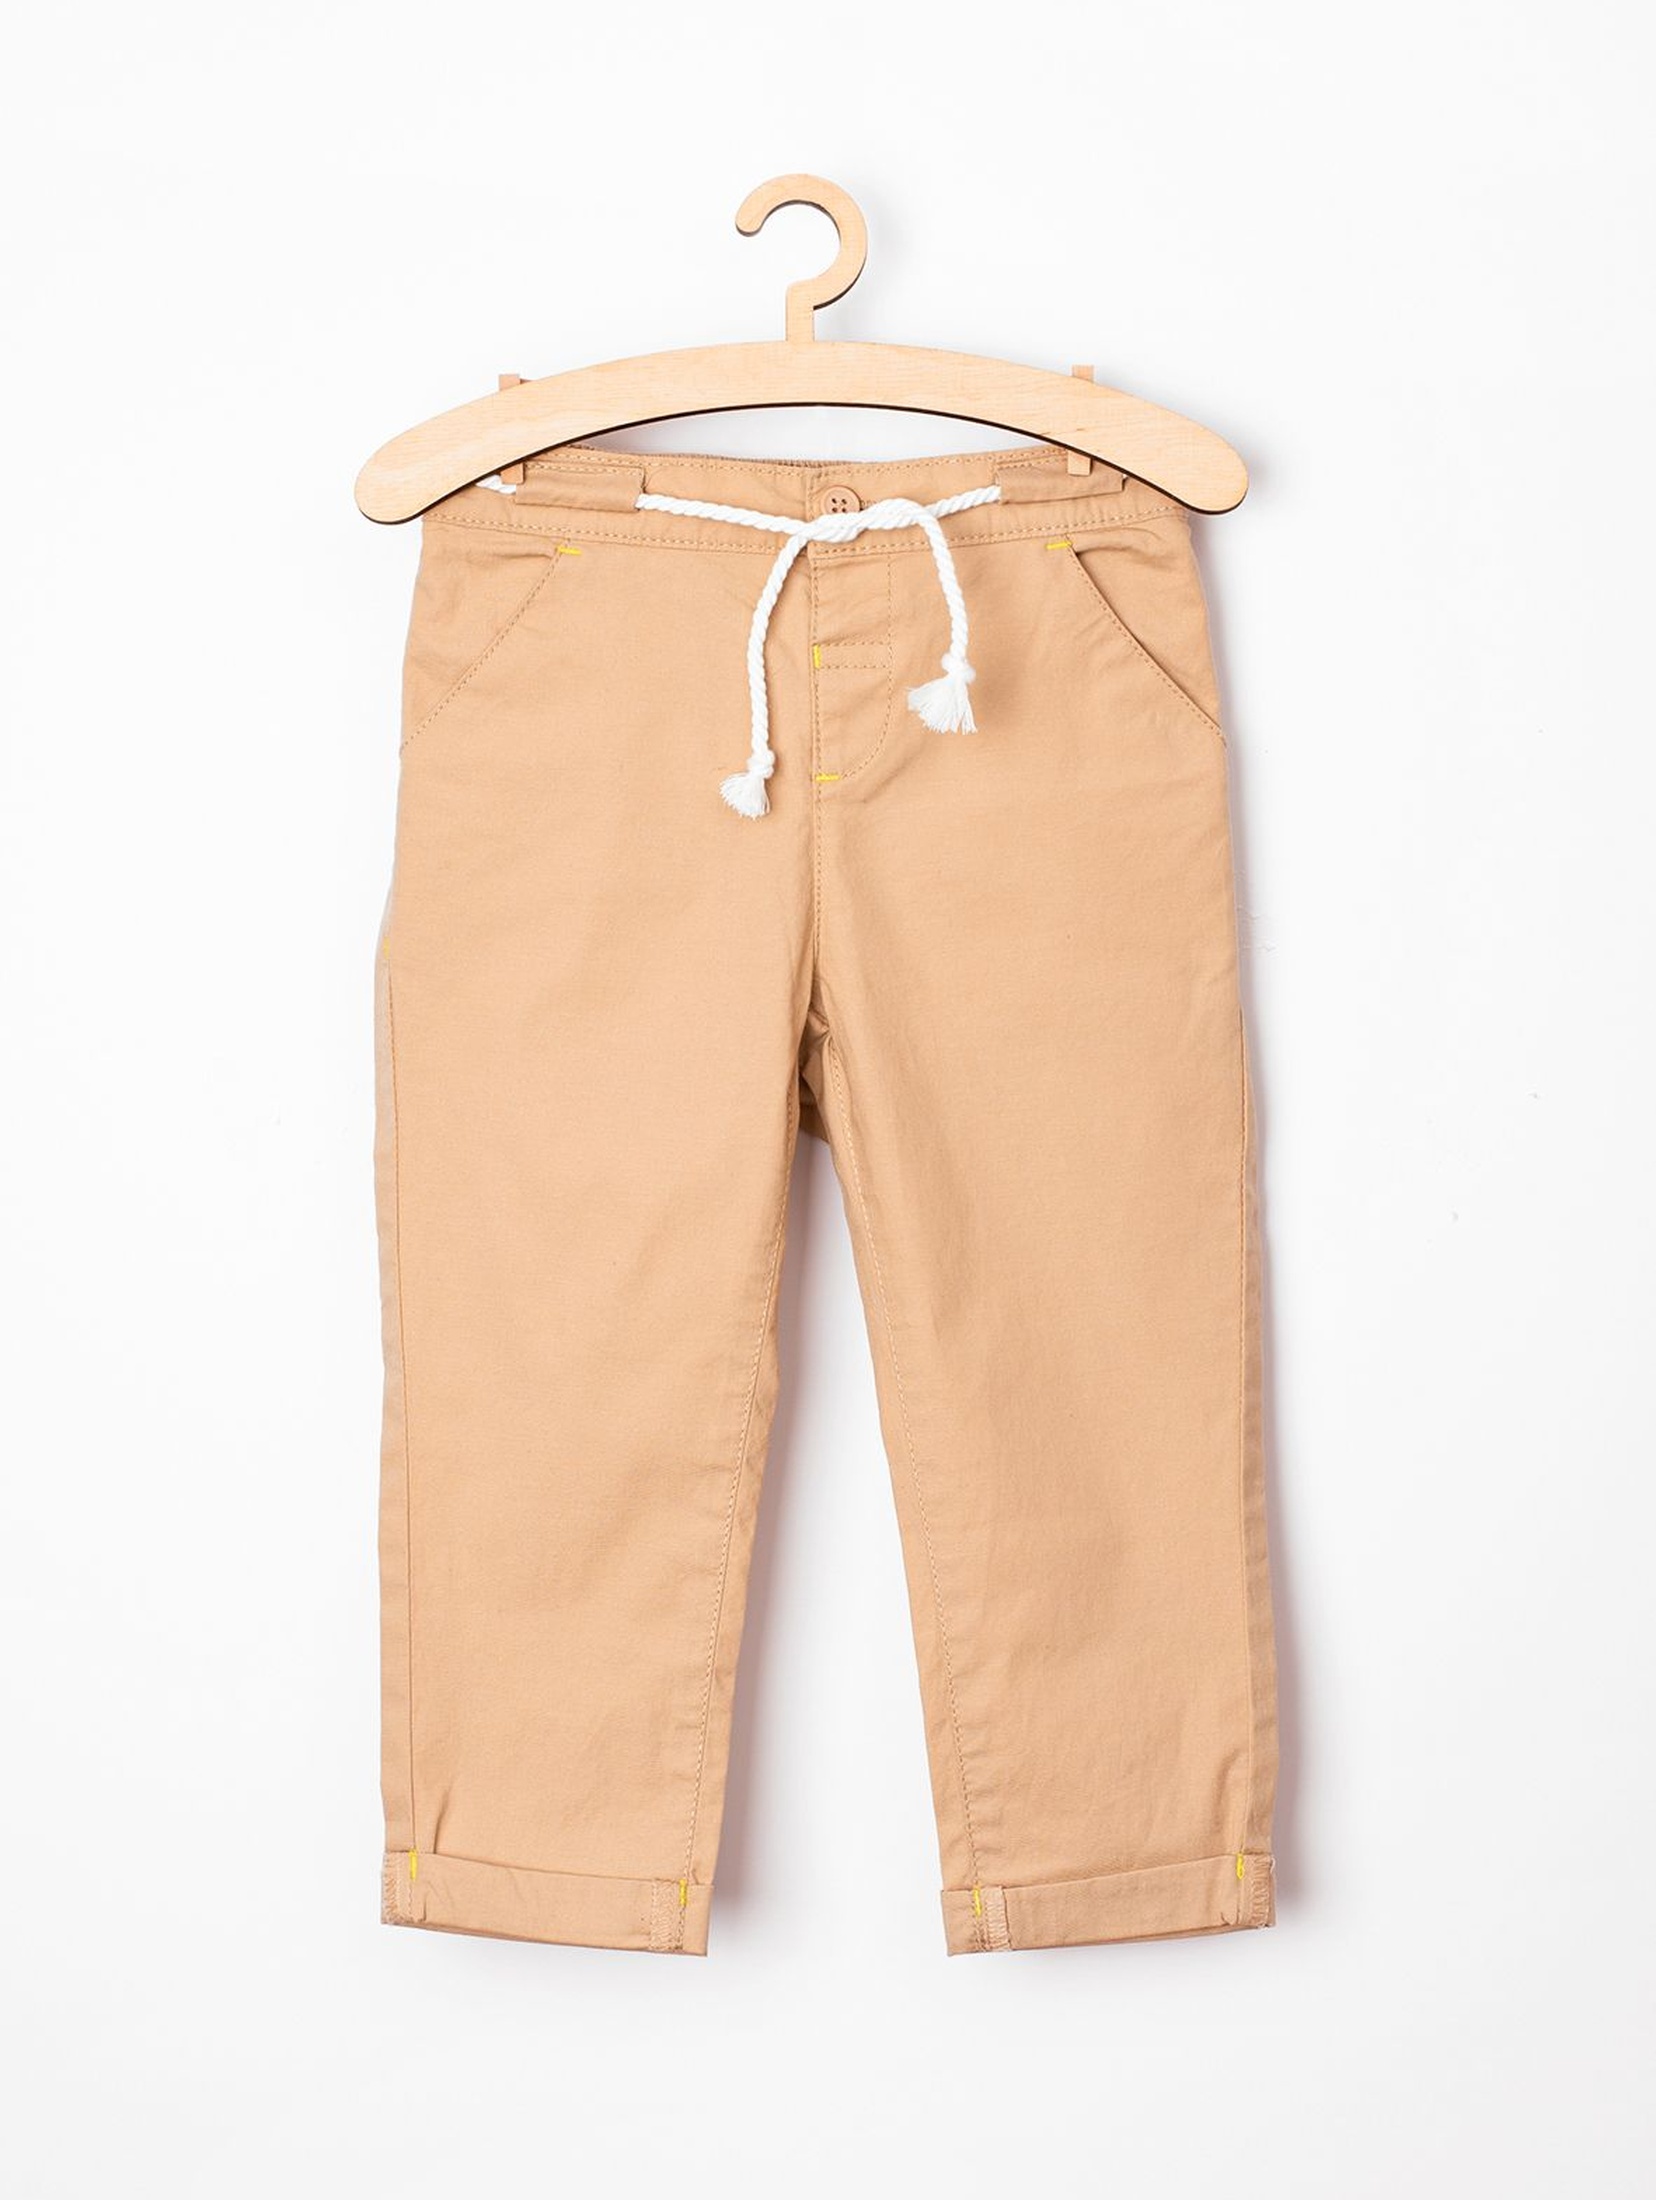 Spodnie dla chłopca - chinosy